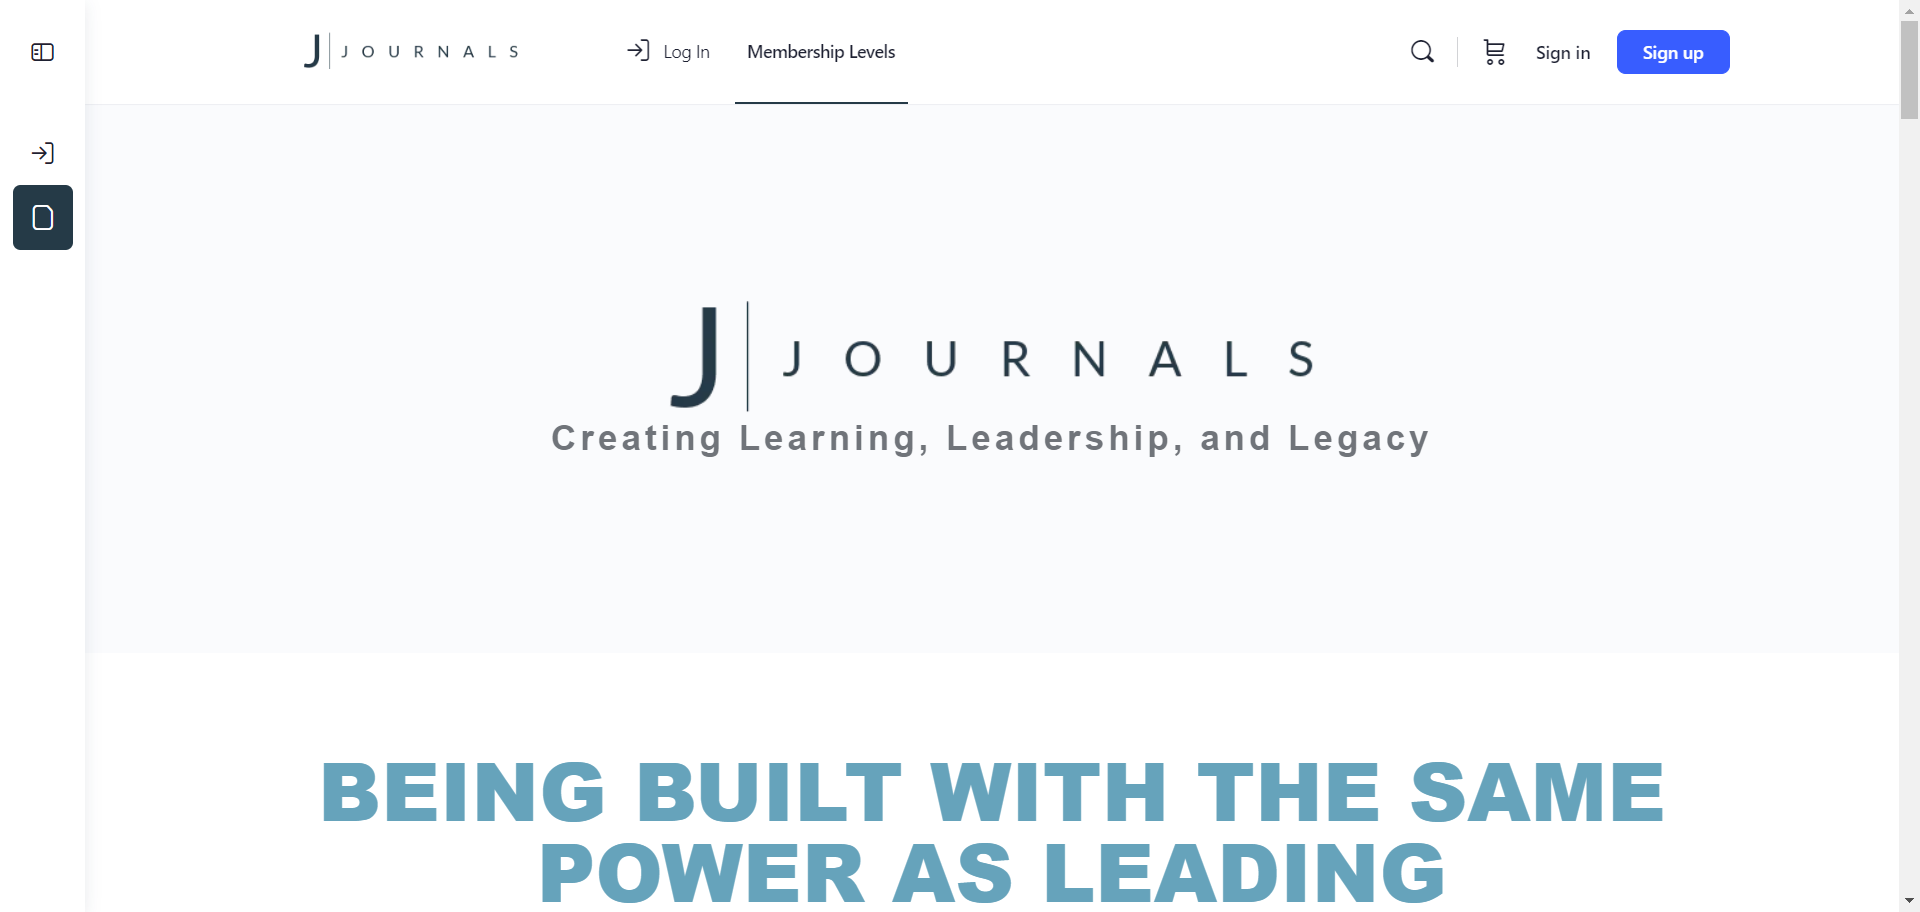 journals-social